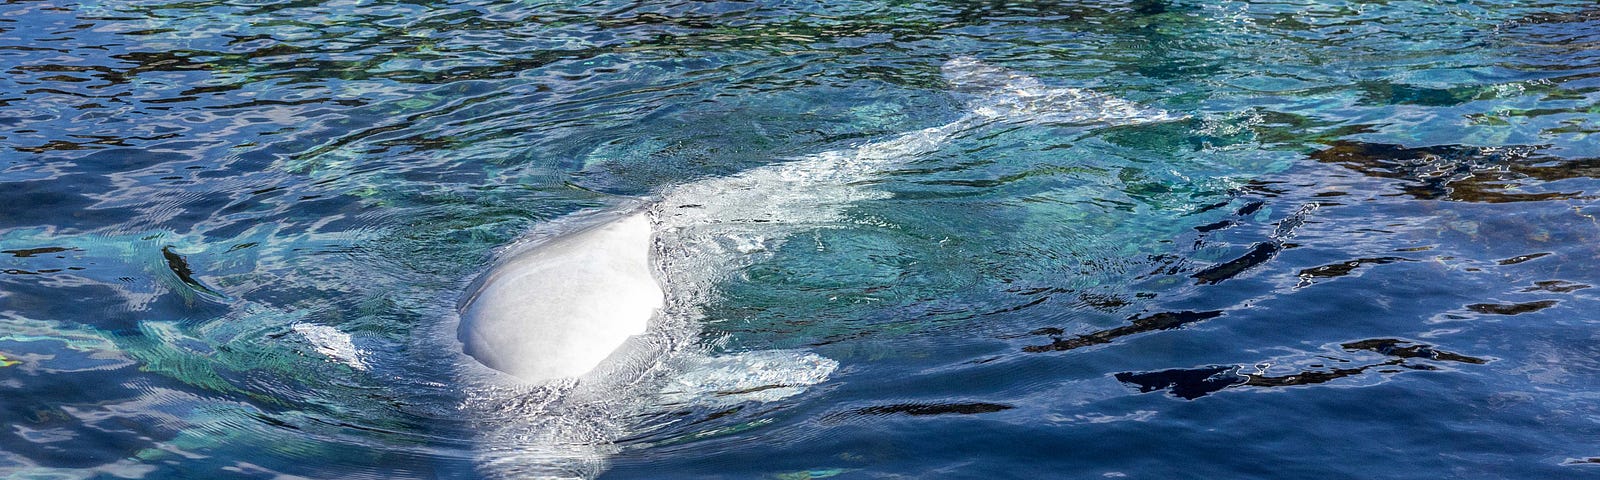 A Beluga Whale swims in an outdoor tank at an aquarium.